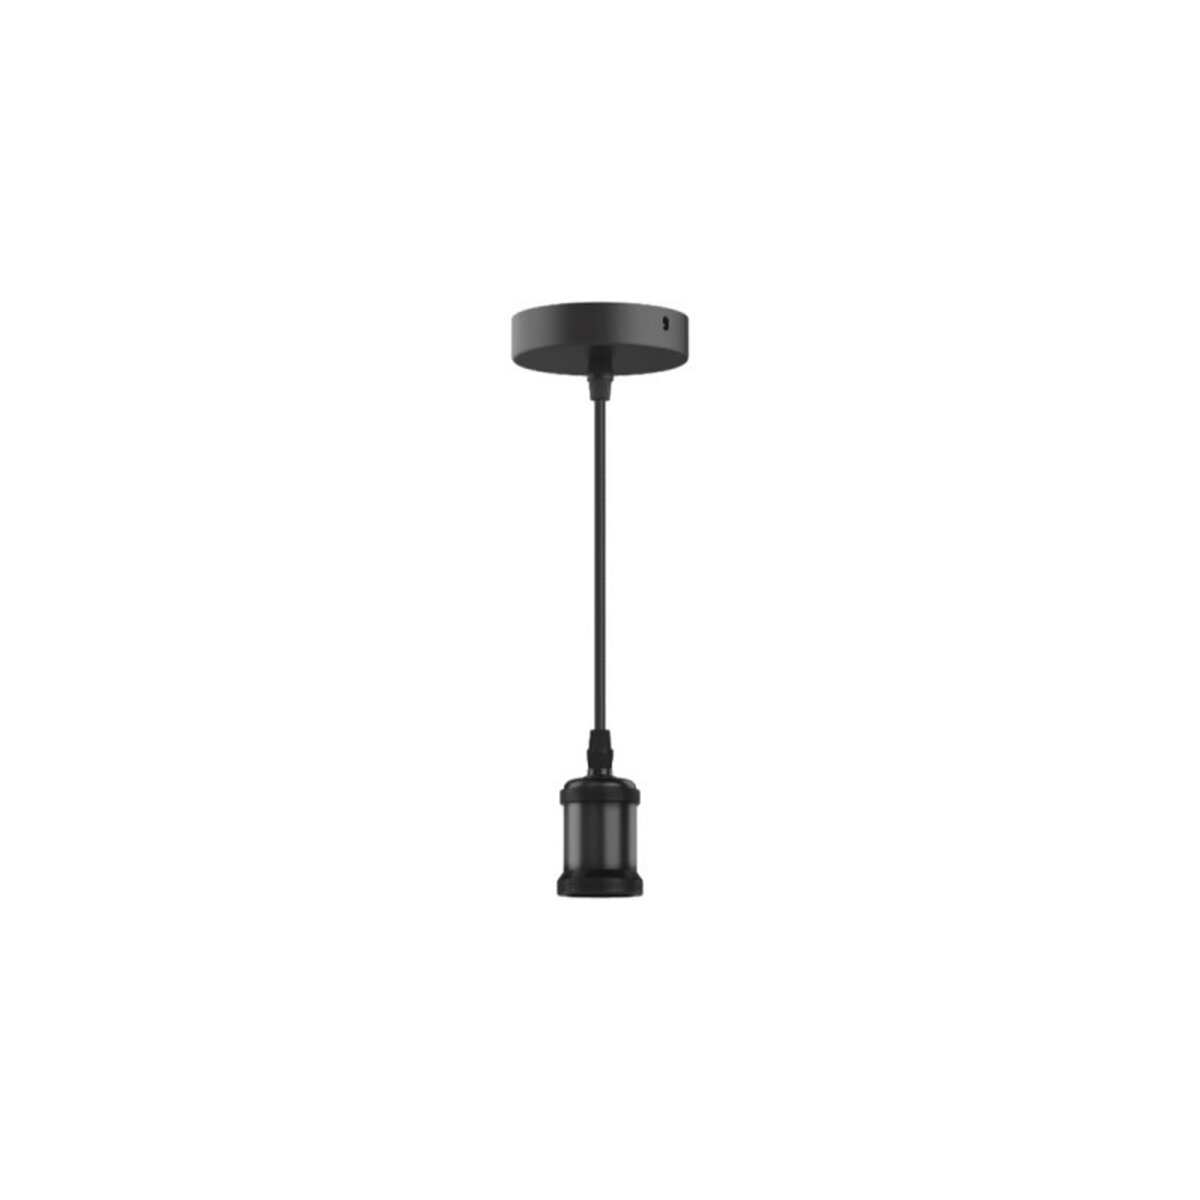  Suspension luminaire style antique XXCELL - noir mat - E27 - 1m